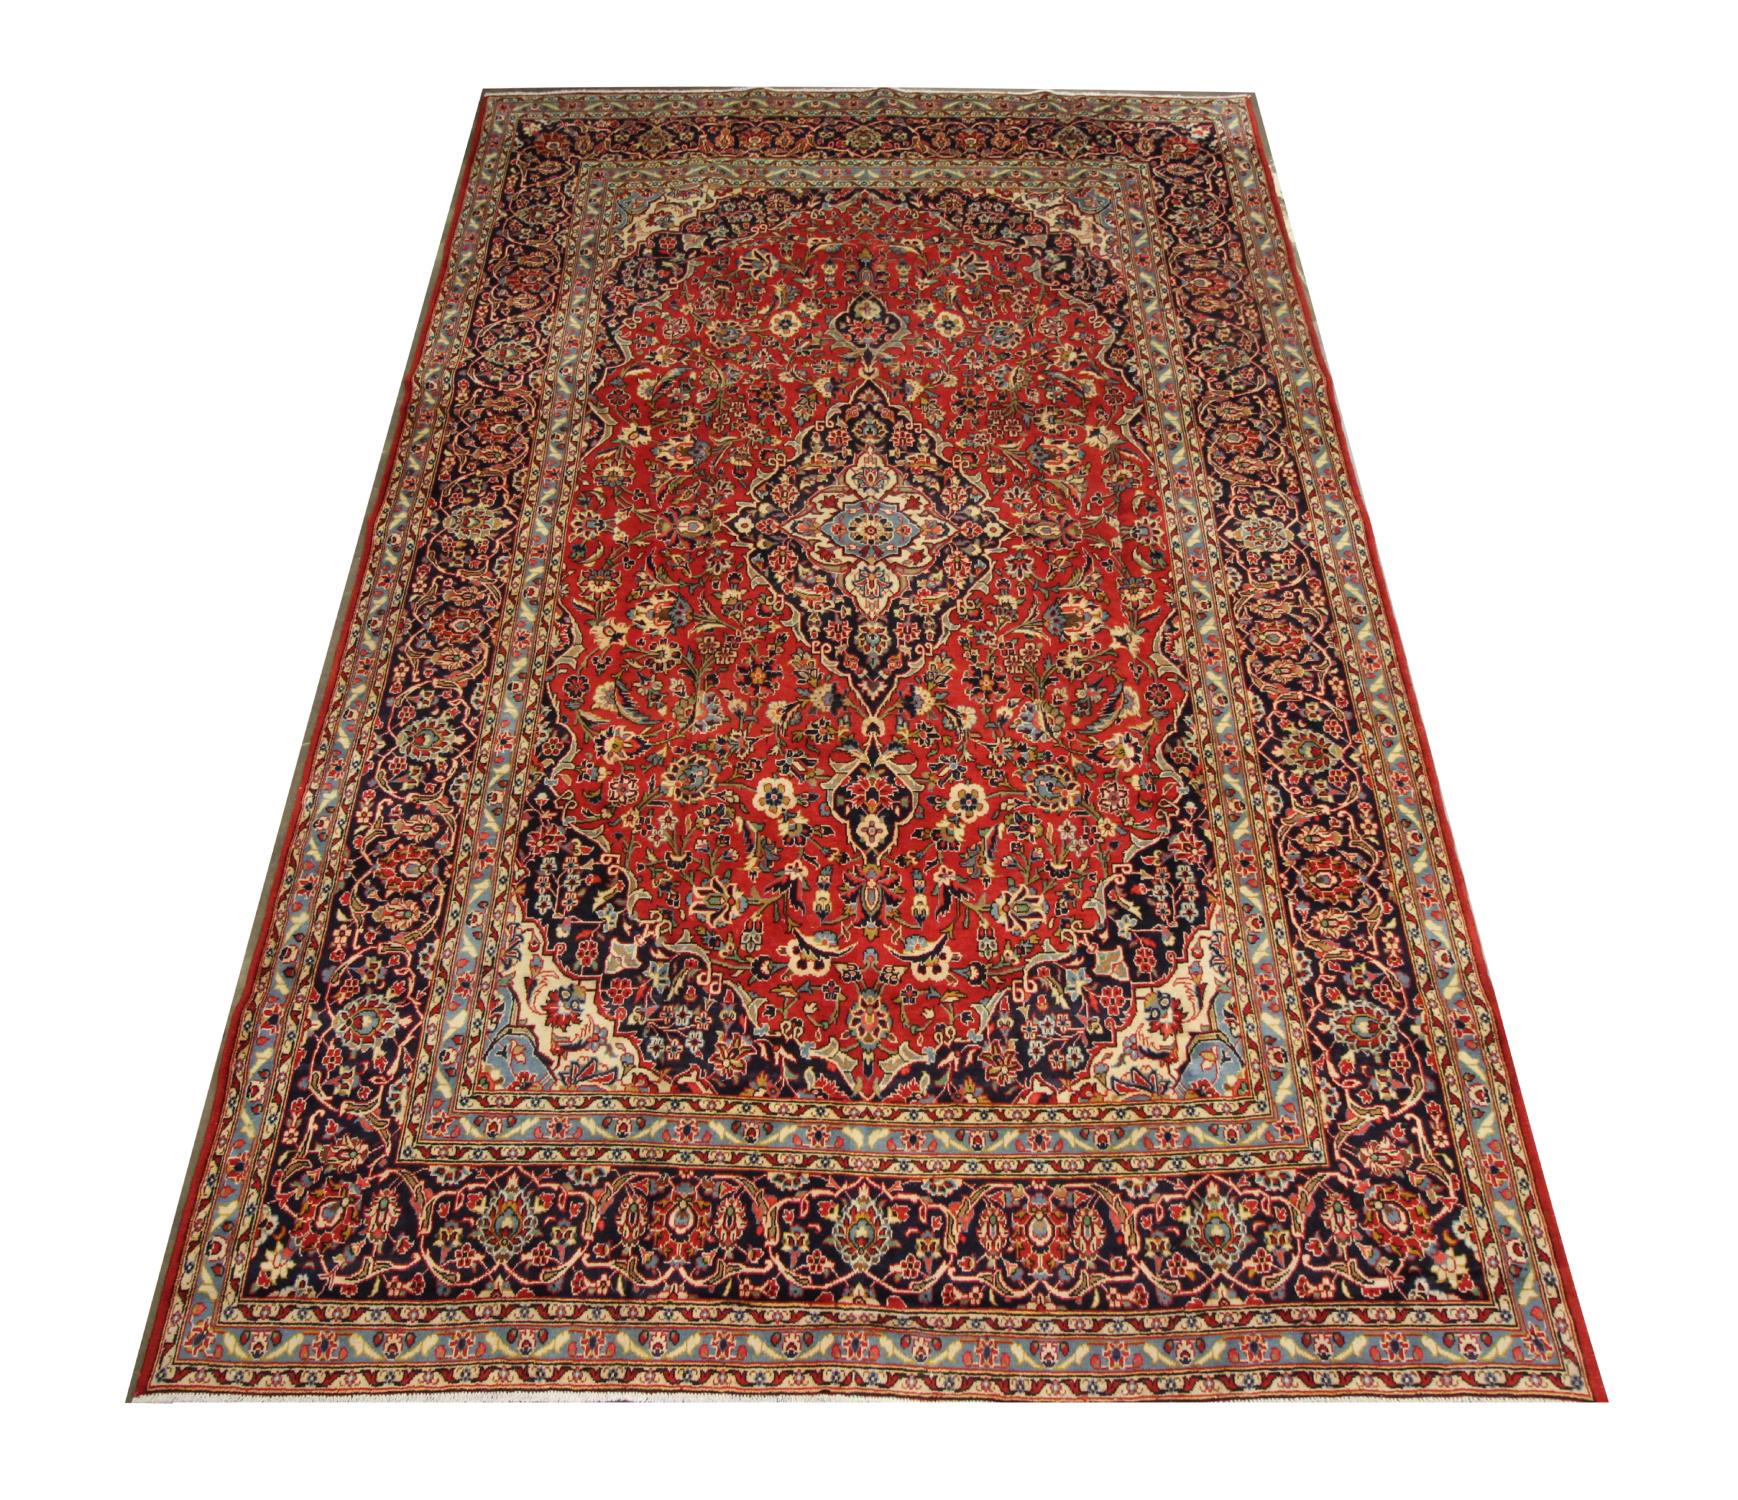 Dieser große Orientteppich ist ein wunderbares Beispiel für türkische Teppiche, die Ende des 20. Jahrhunderts geknüpft wurden. Das zentrale Muster wurde auf einem sattroten Feld mit tiefblauen, grünen, beigen und rostfarbenen Akzenten gewebt, die